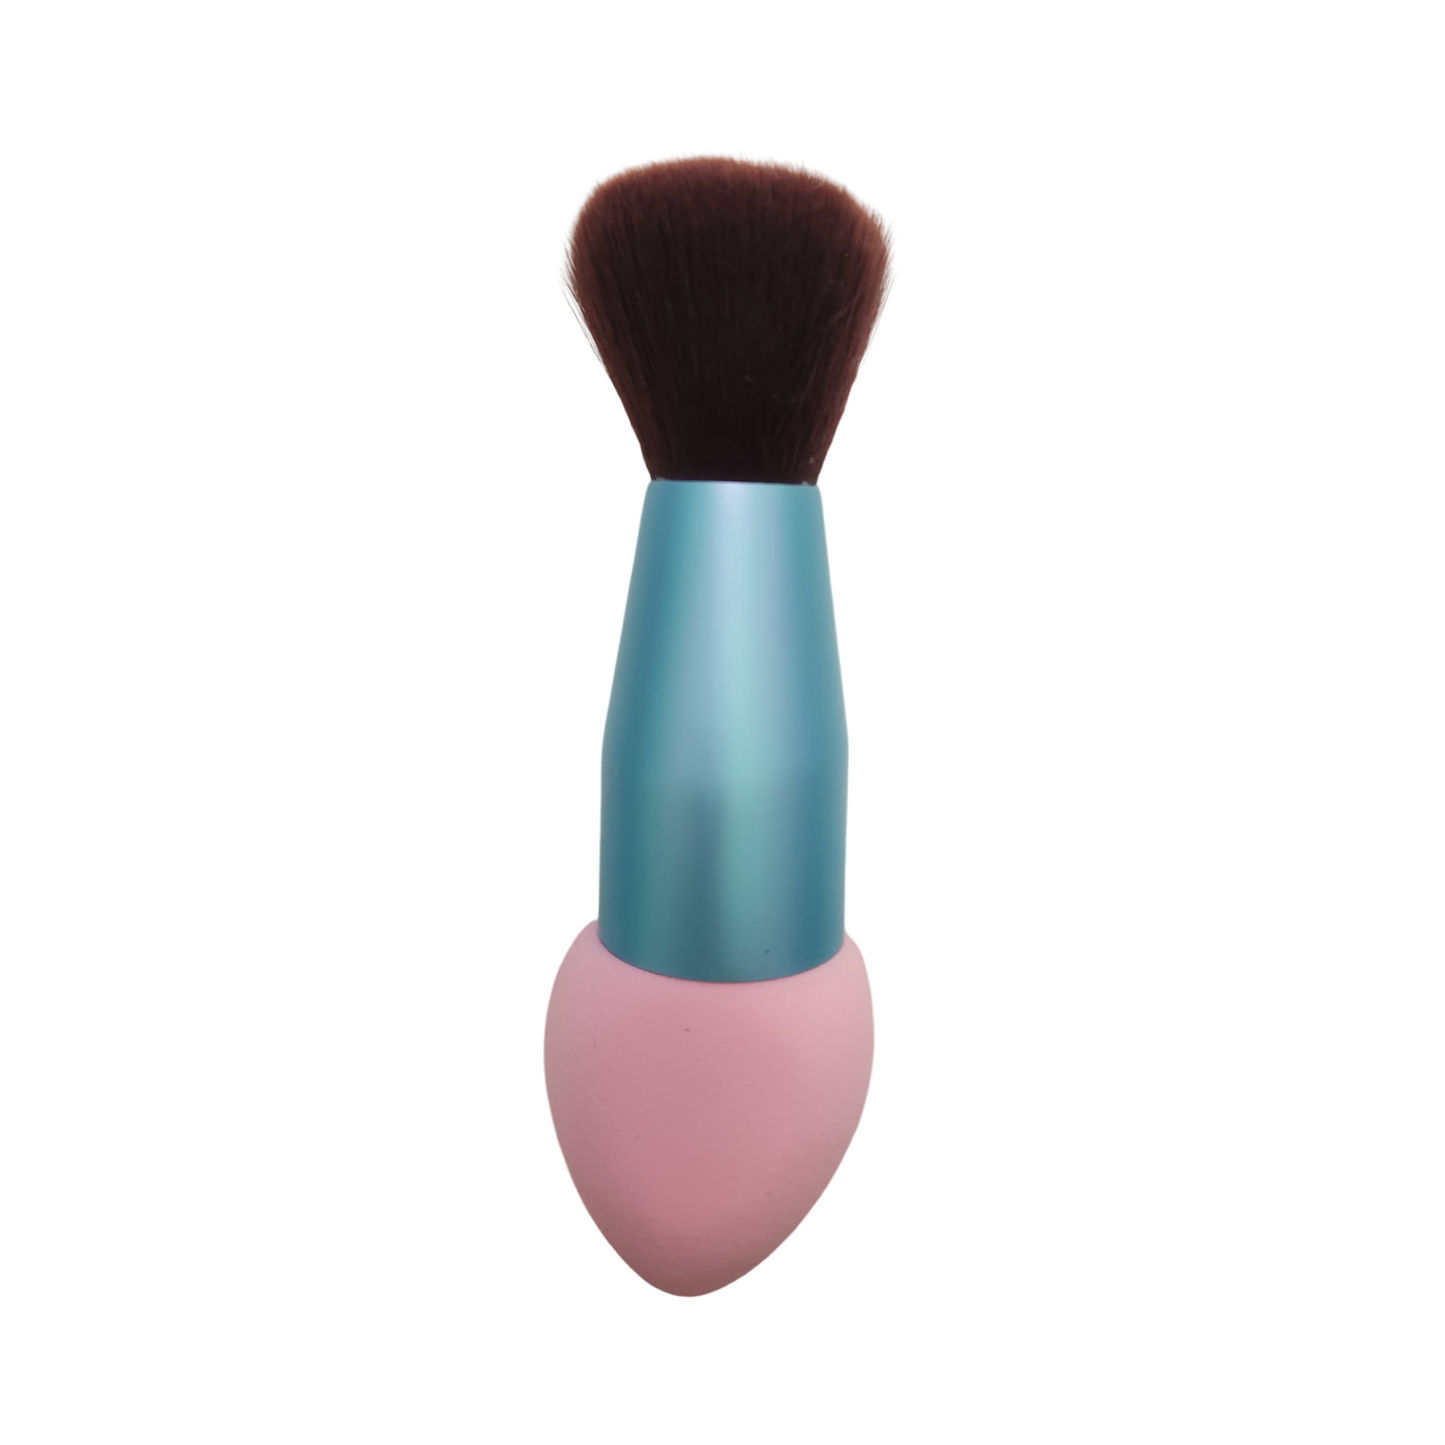 Makeup Blush Brush with Cosmetics Blender Sponge | Shimeiyi